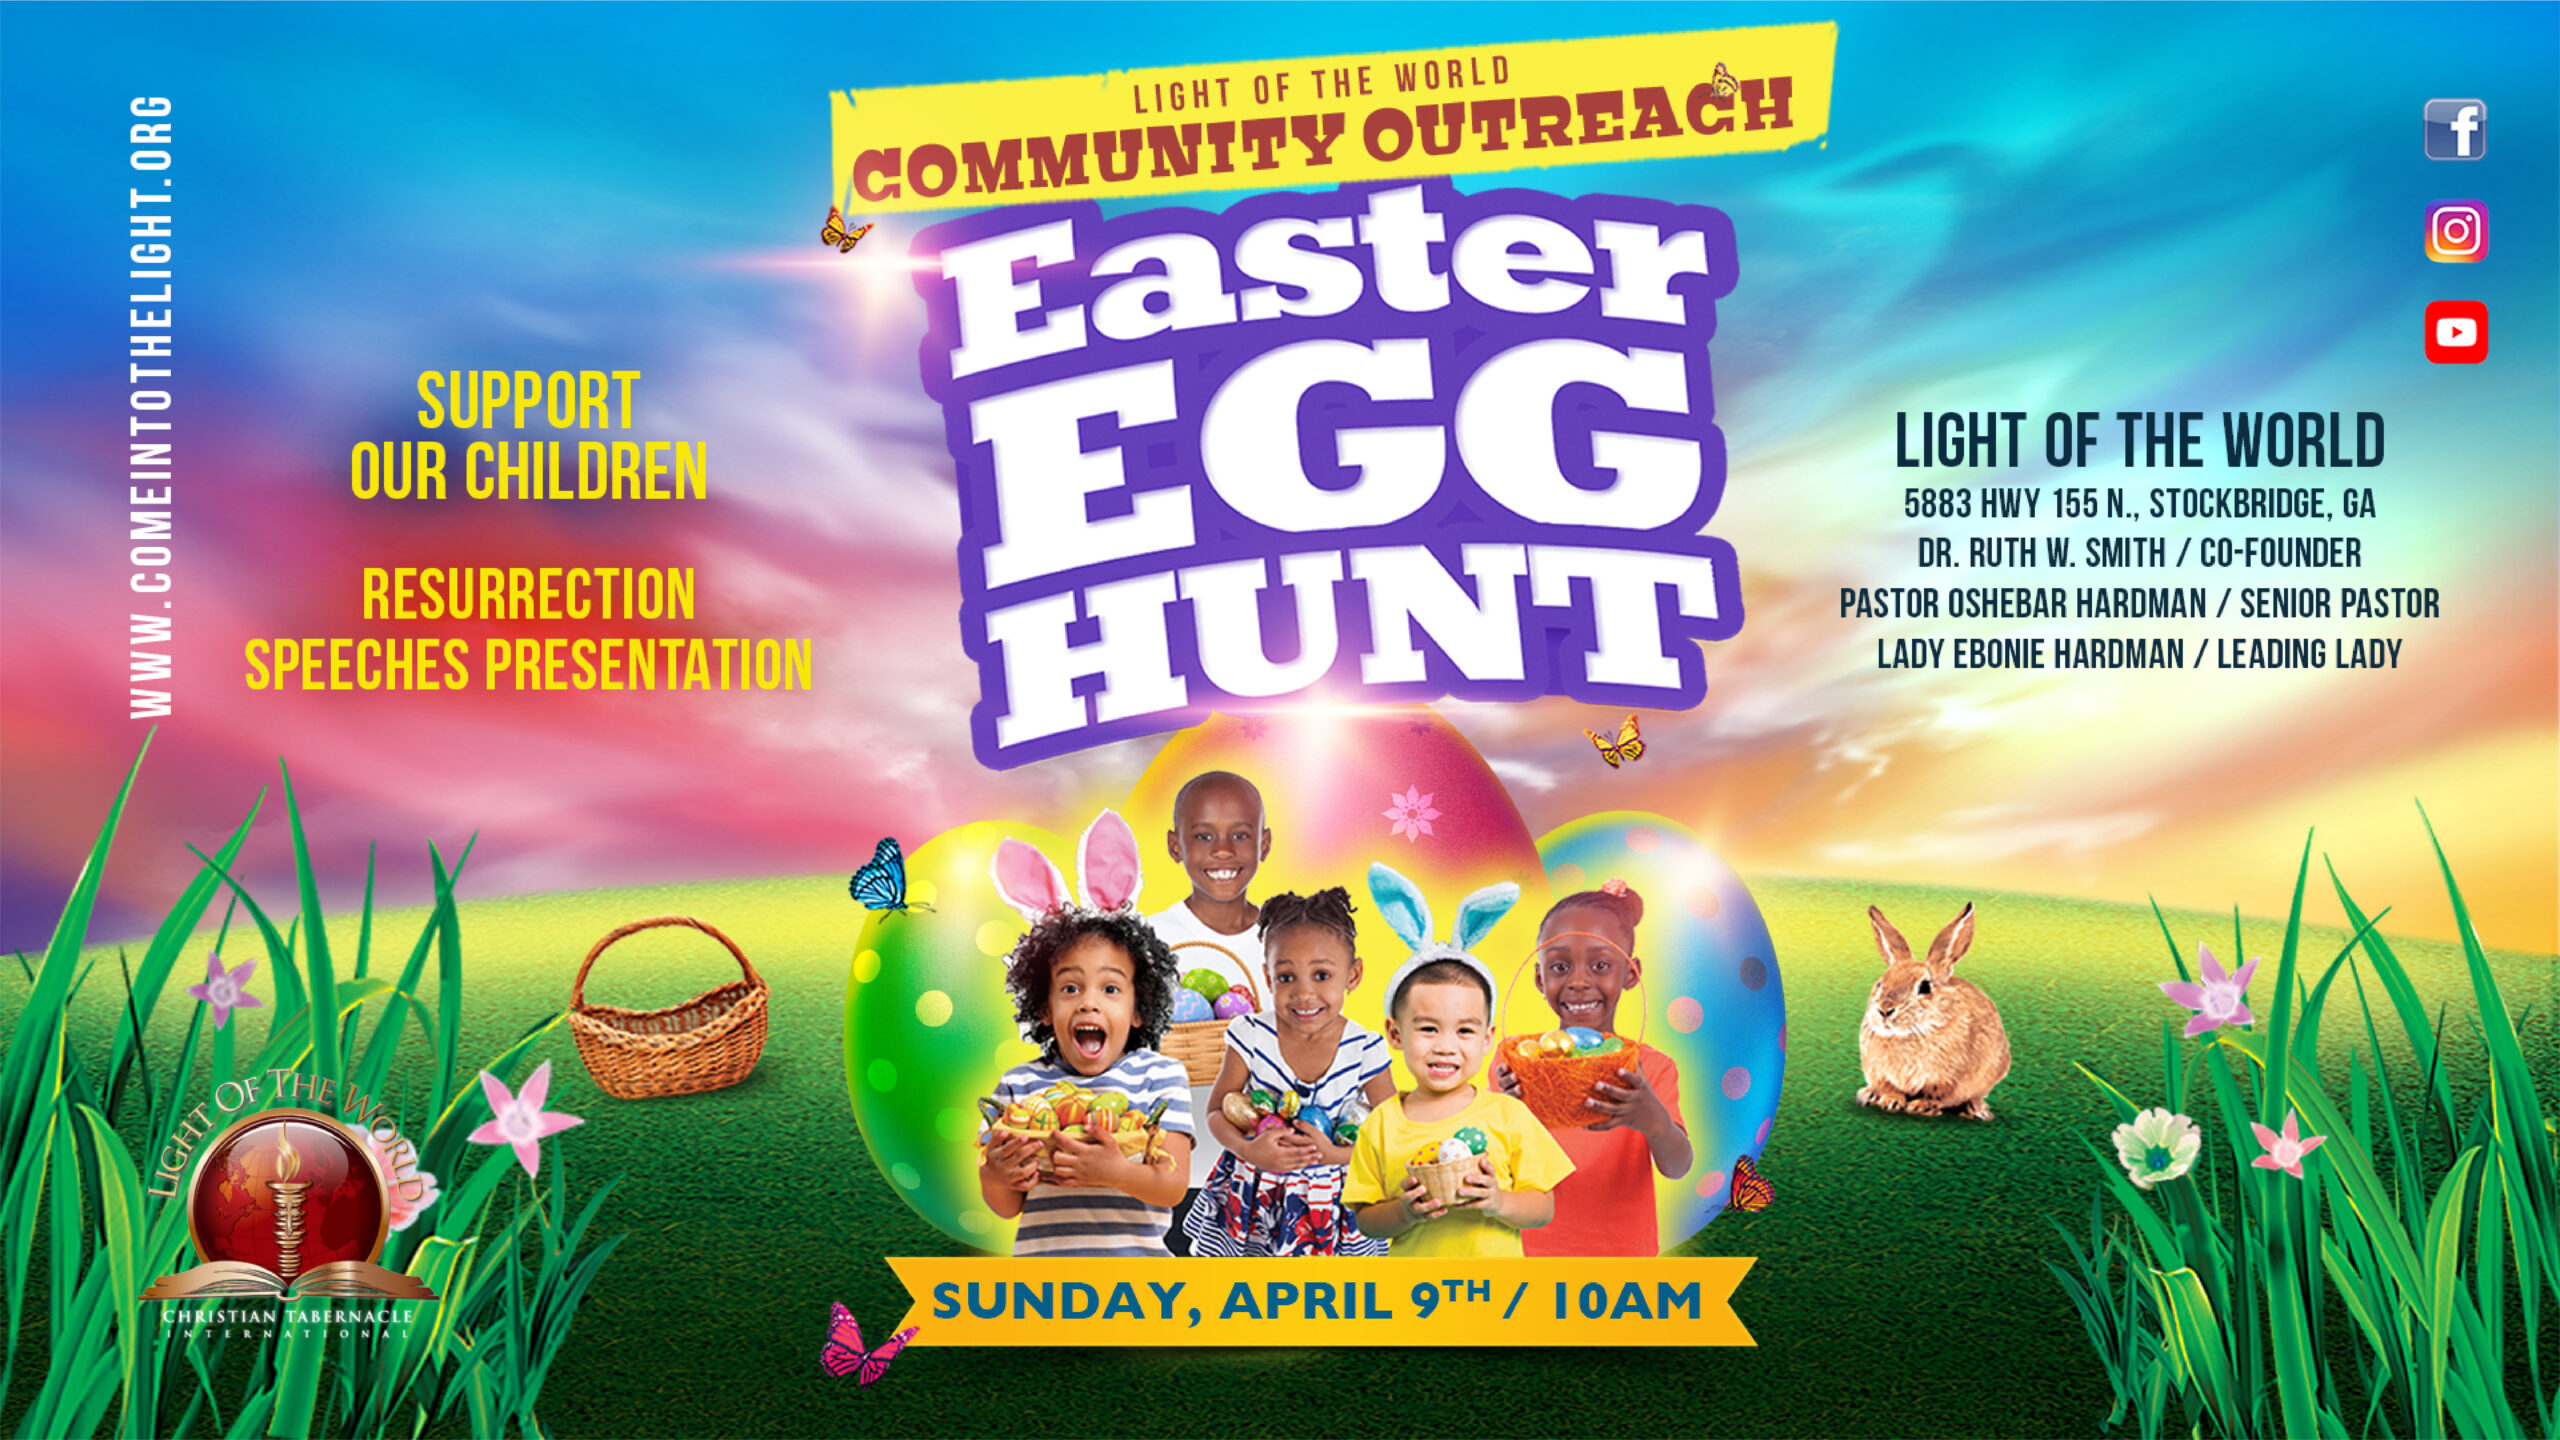 Easter Egg Hunt flyer